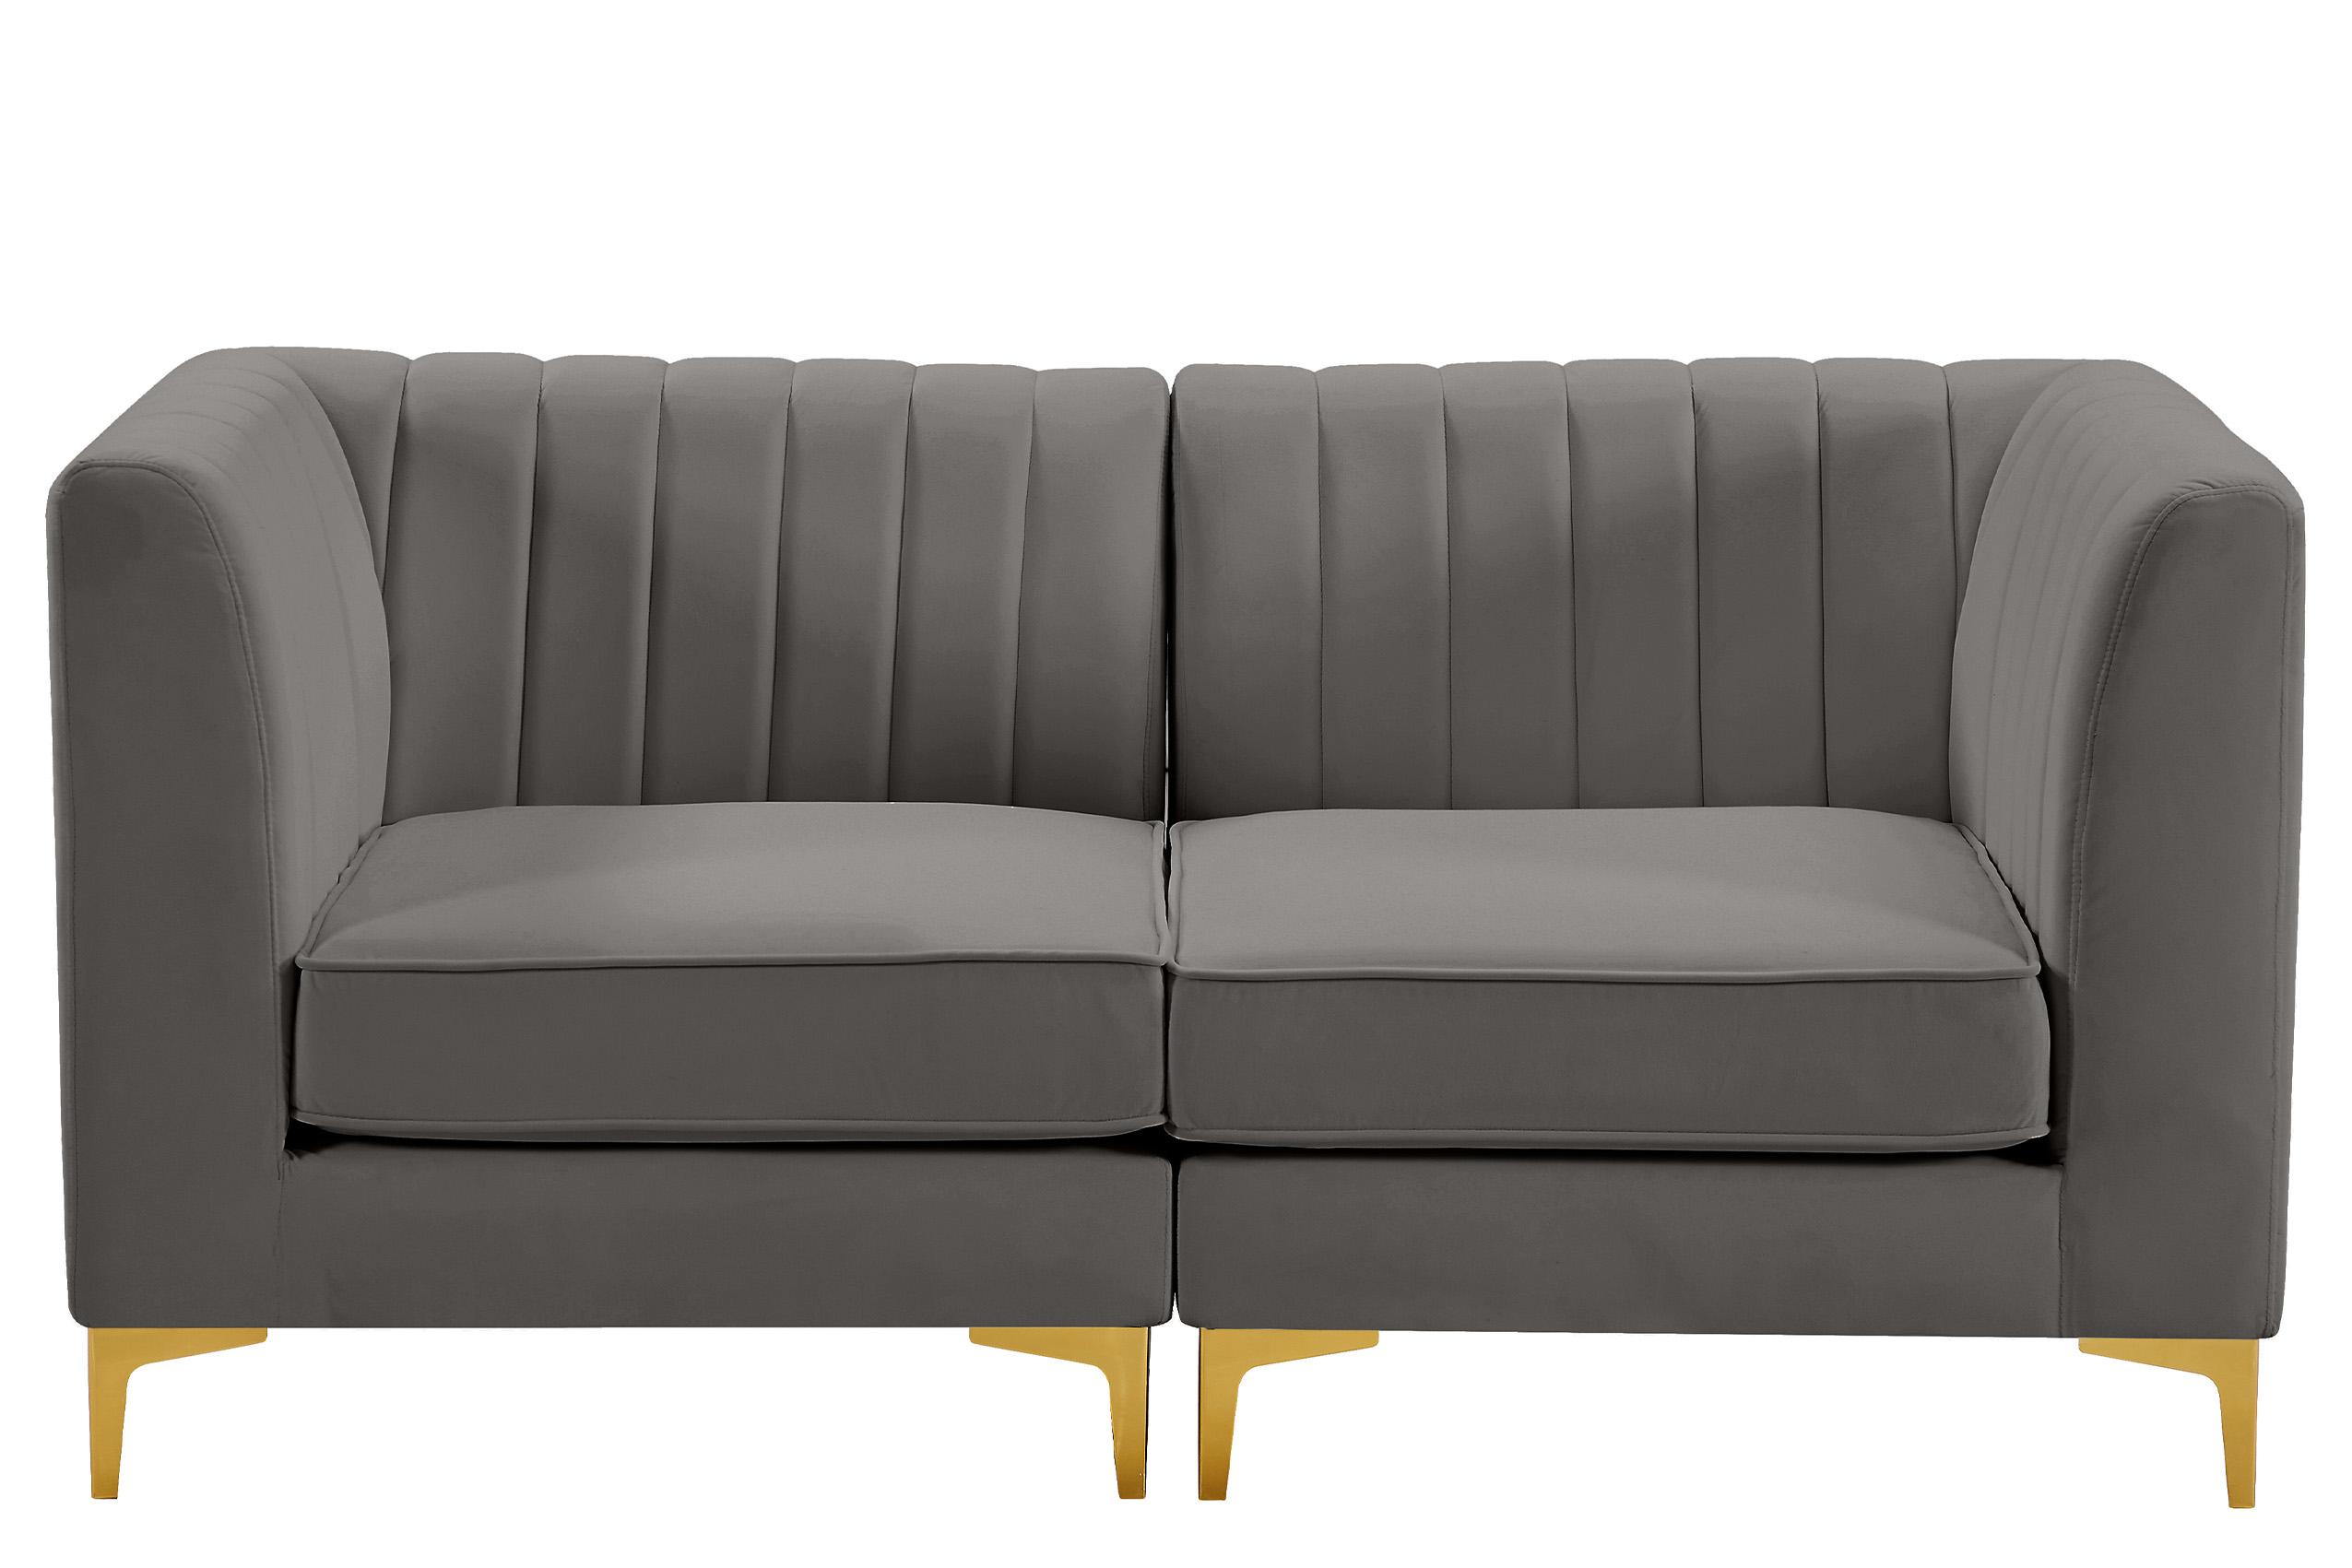 

    
Meridian Furniture ALINA 604Grey-S67 Modular Sectional Sofa Gray 604Grey-S67
